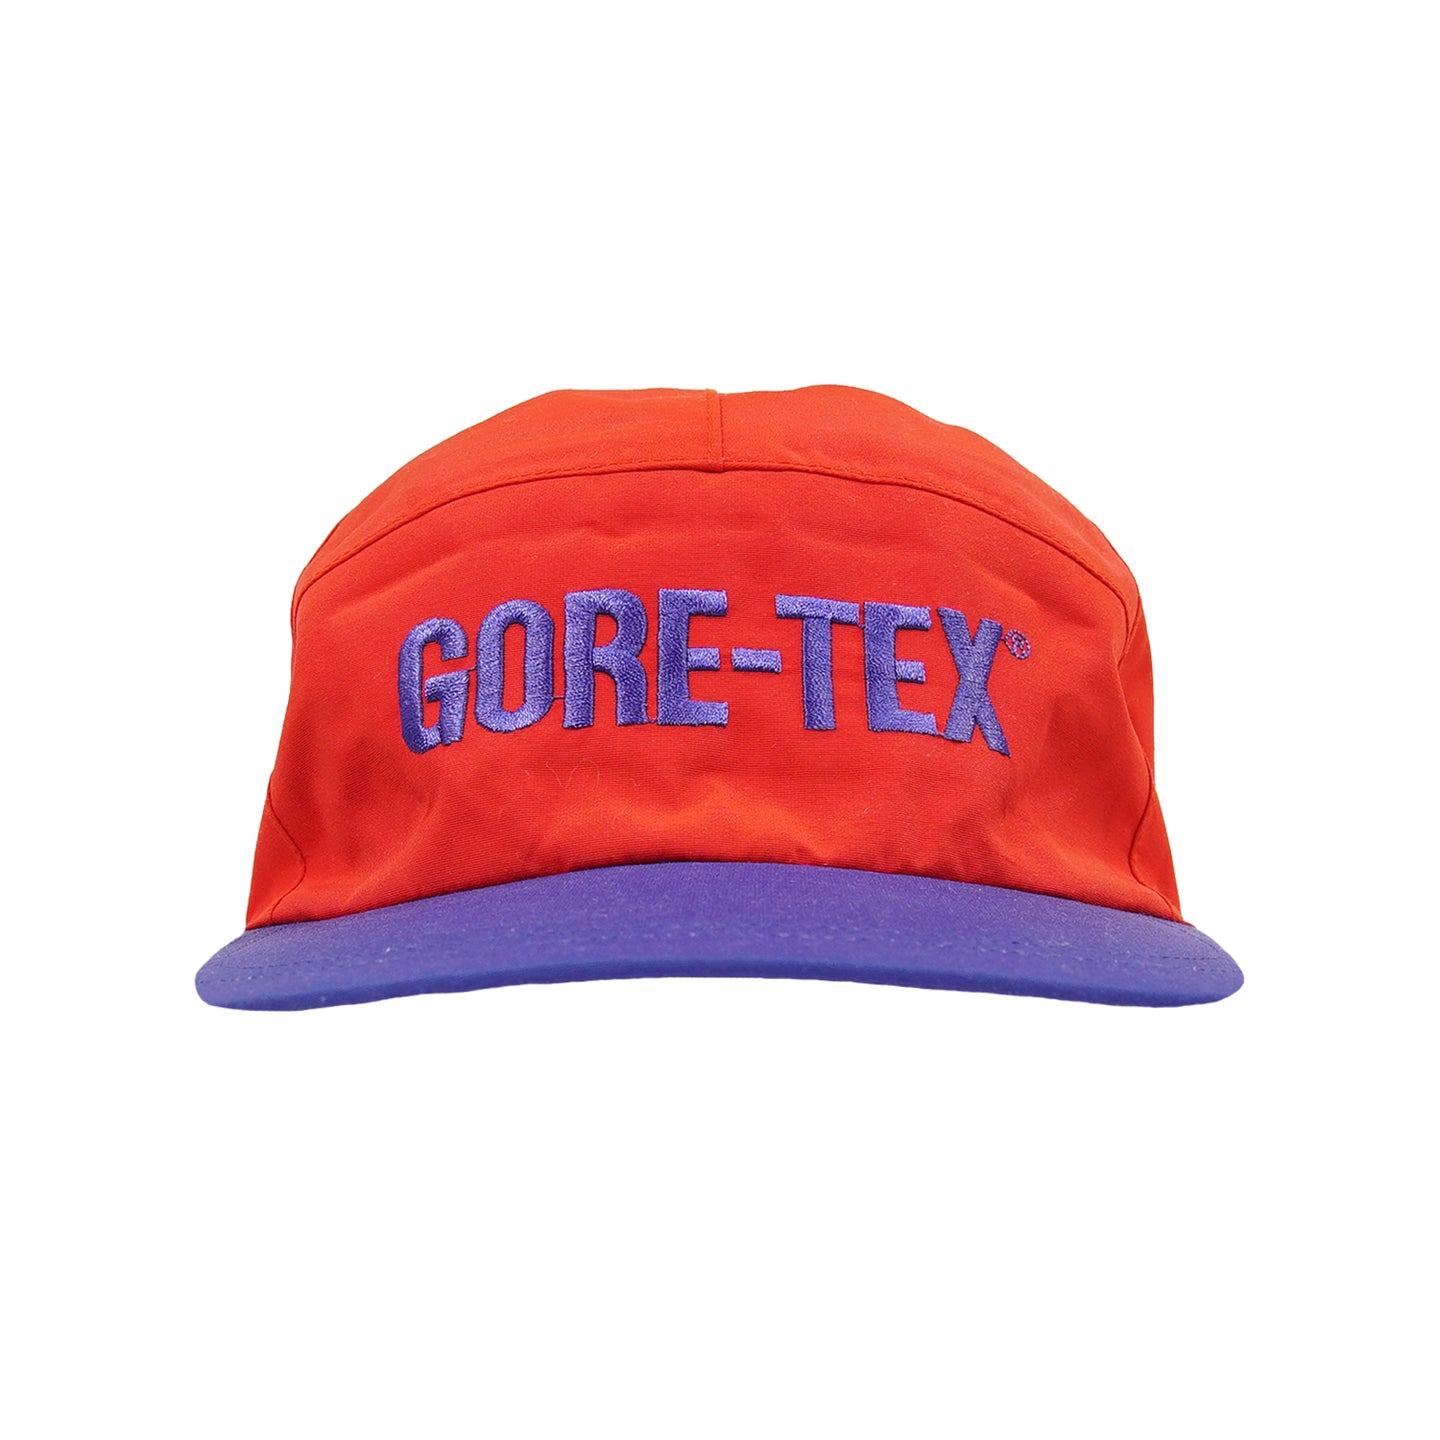 Vintage Gore-Tex strapback hat